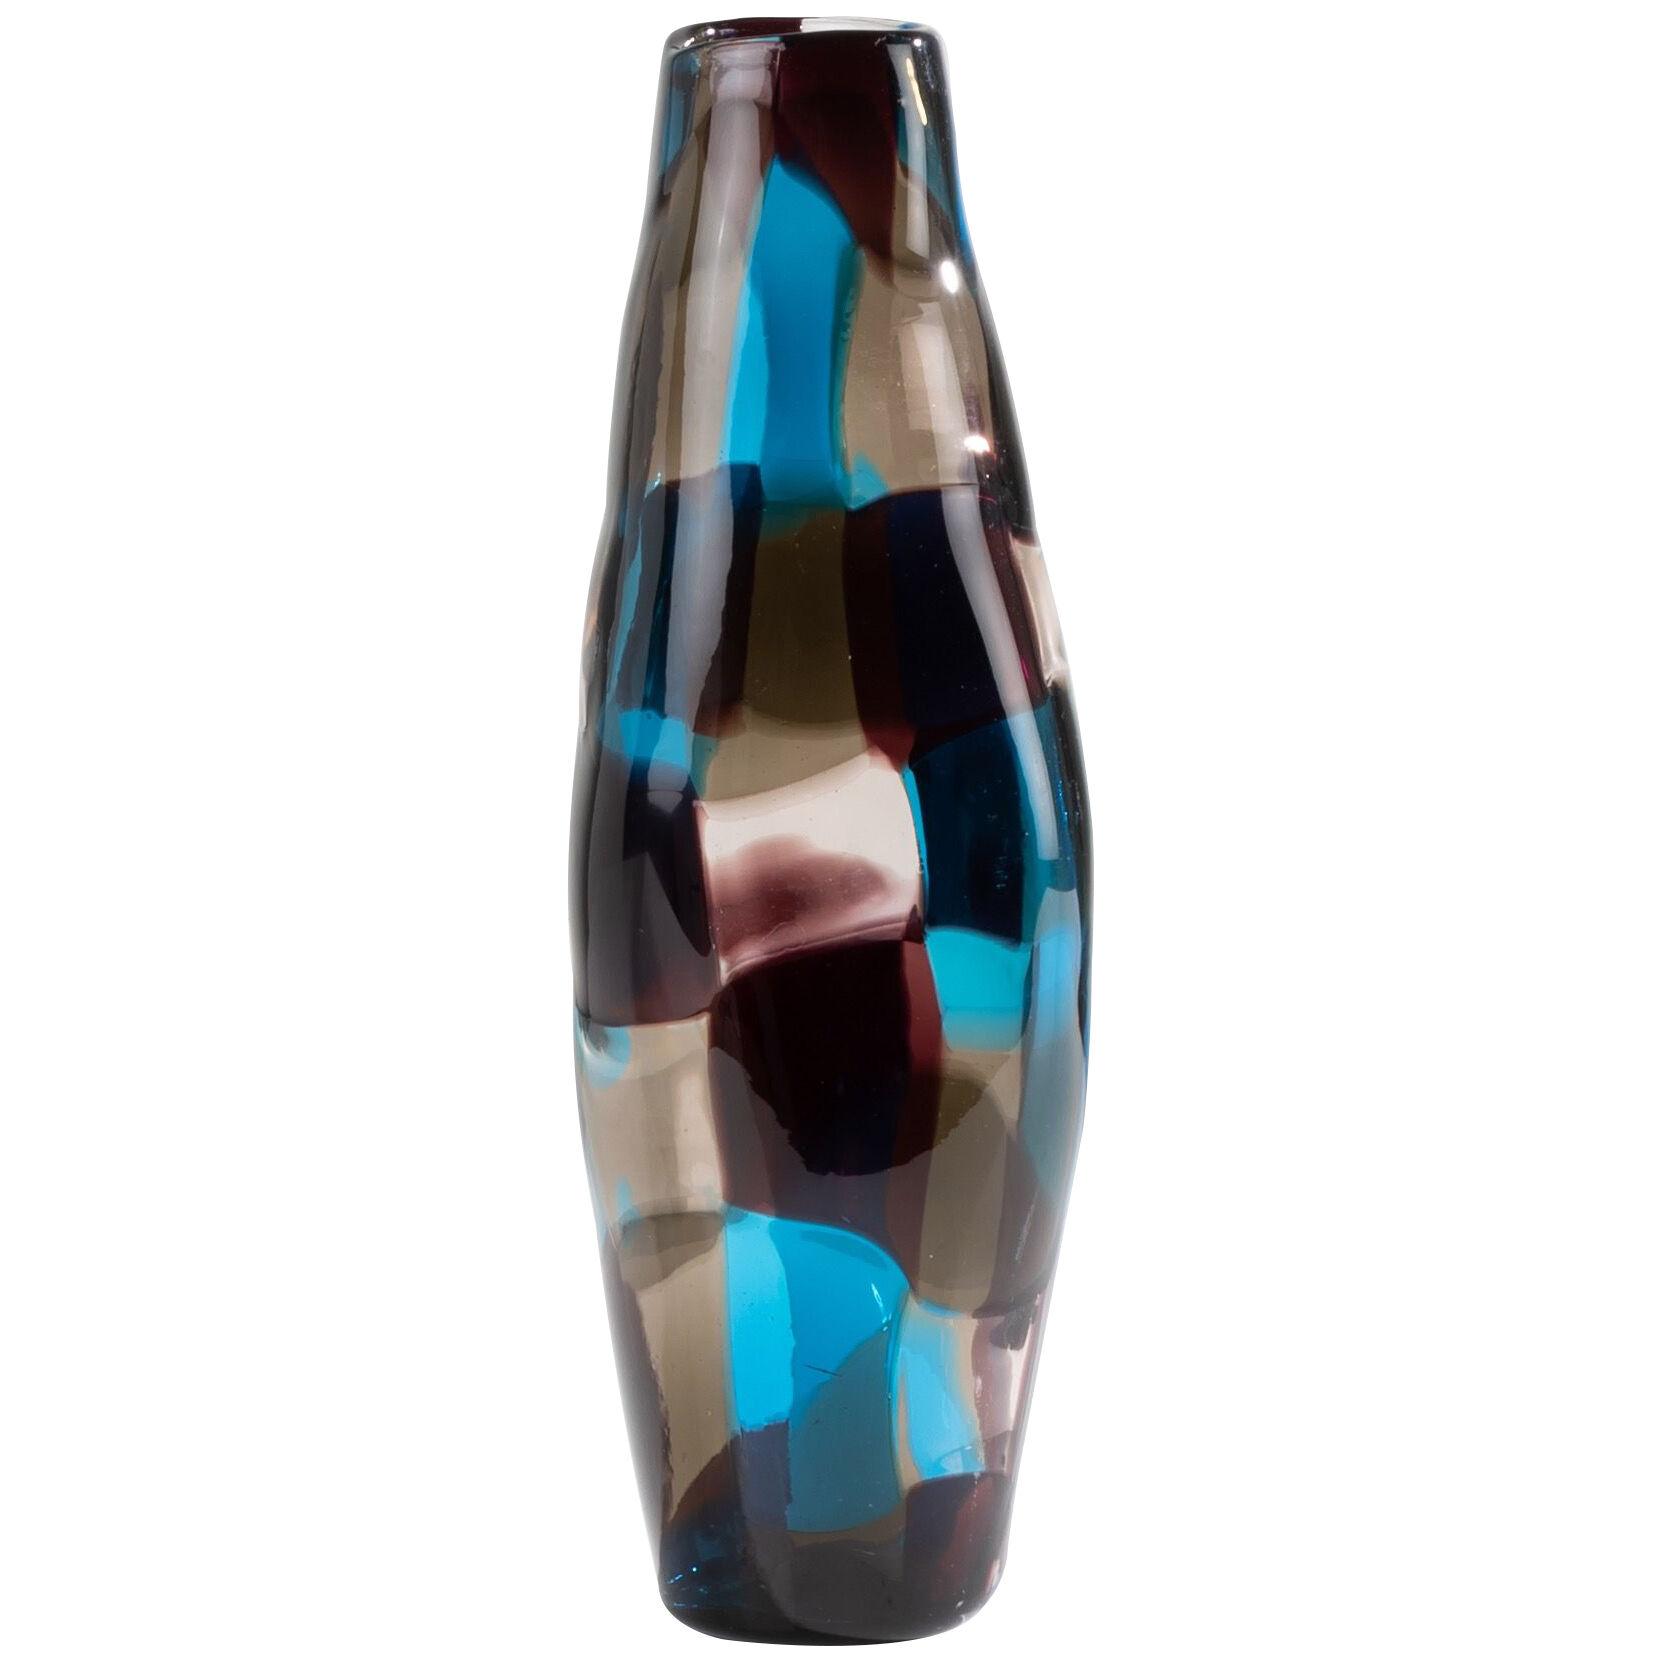 Pezzato vase by Fulvio Bianconi – Referenced under number 4393 – Venini Murano